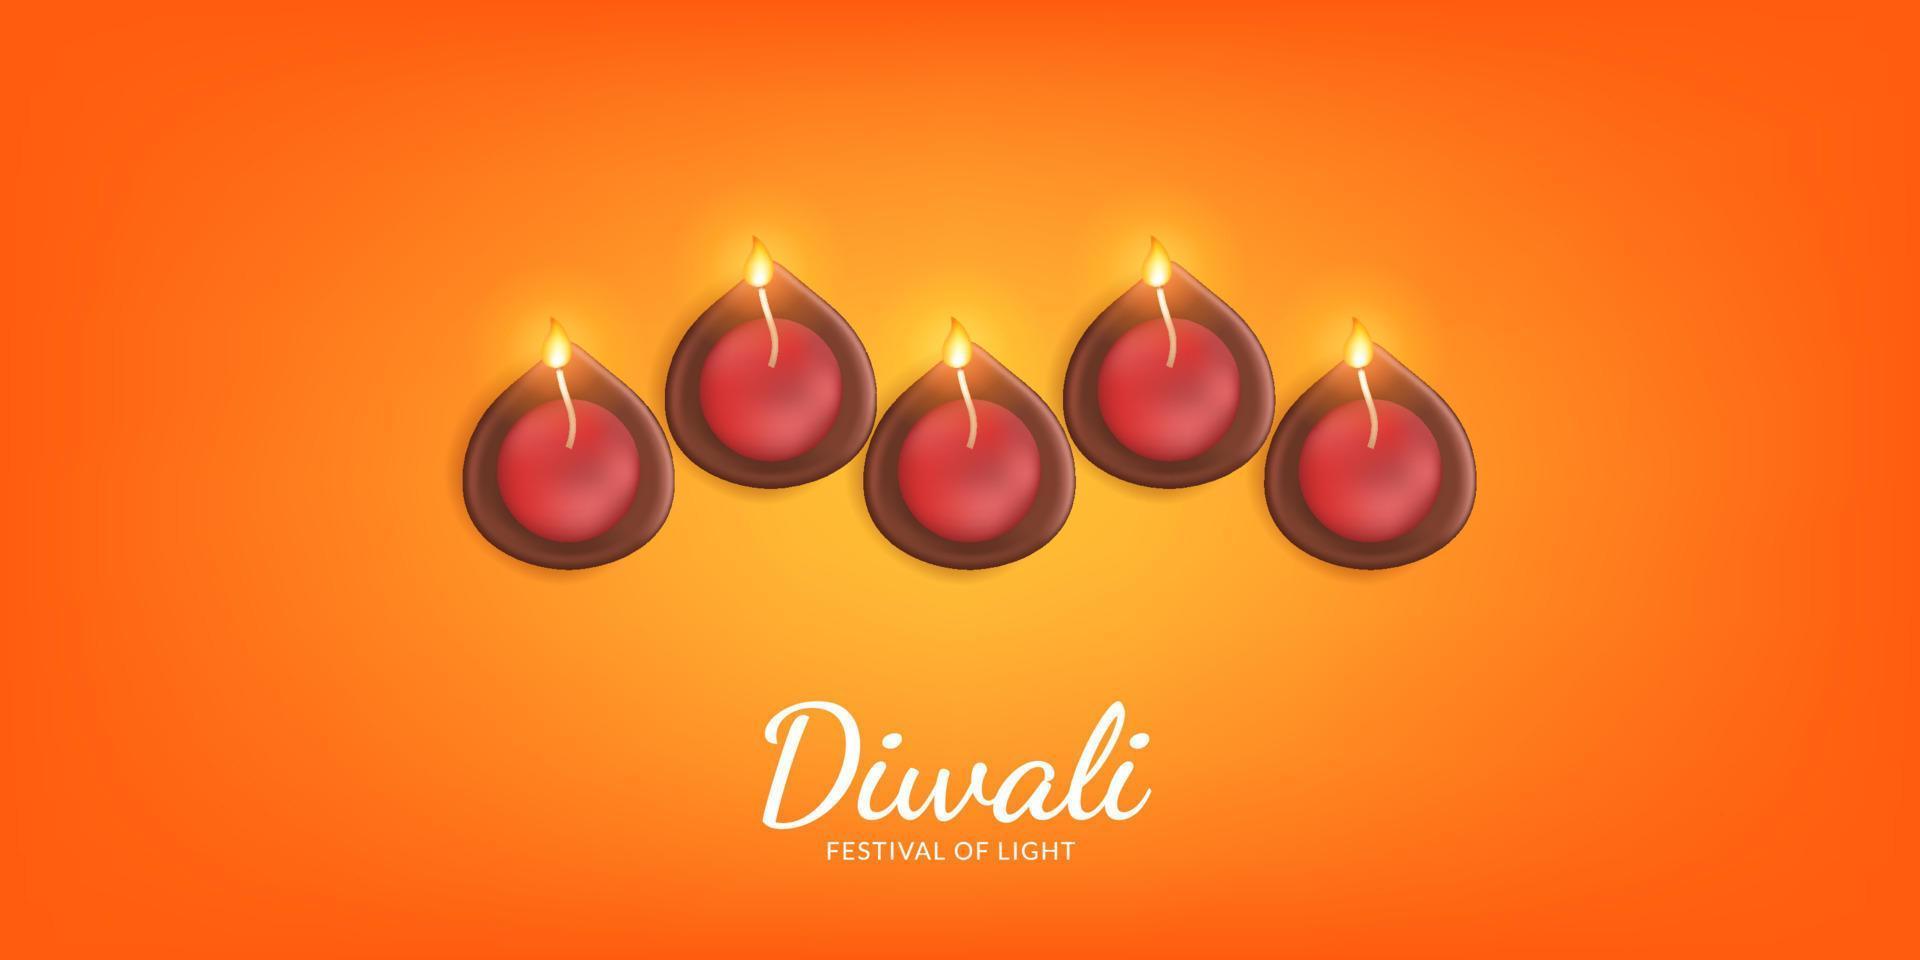 felice diwali, festival della luce con illustrazione di candela lampada a olio su sfondo arancione vettore